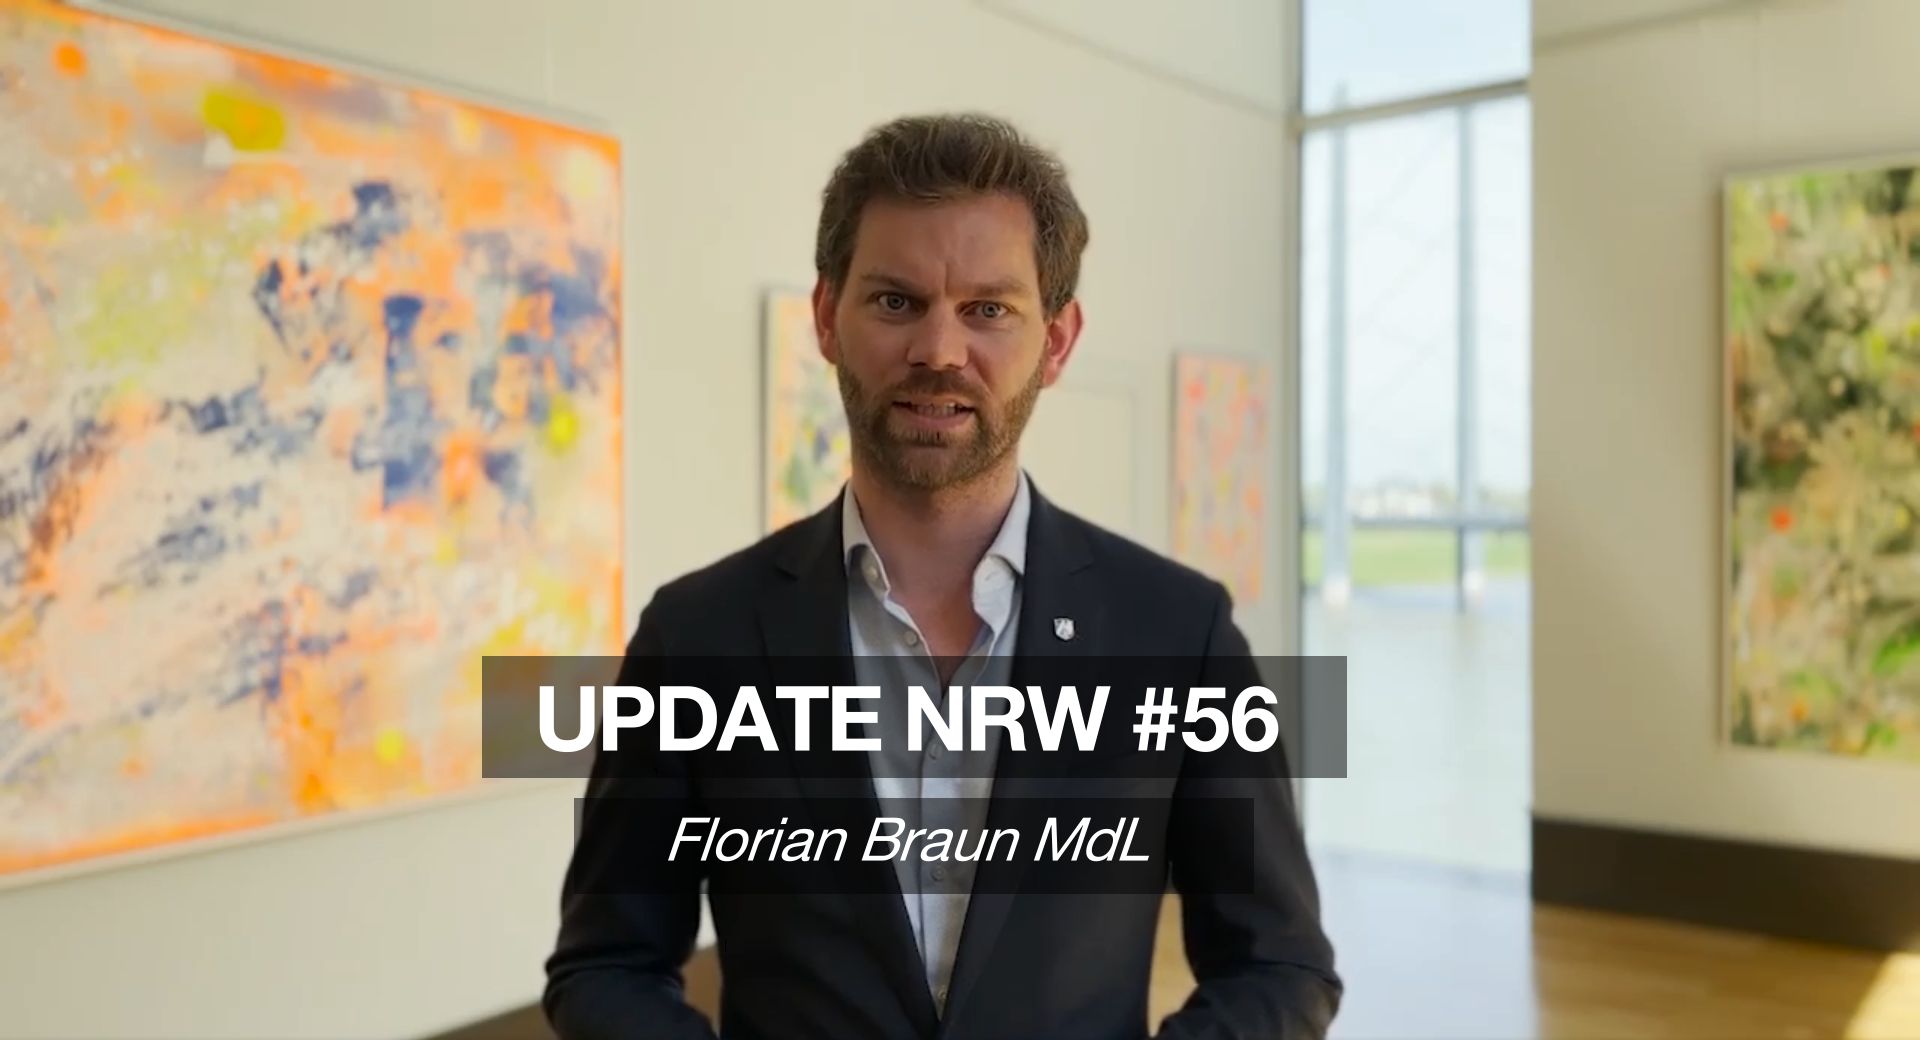 Florian Braun MdL: Update NRW #56